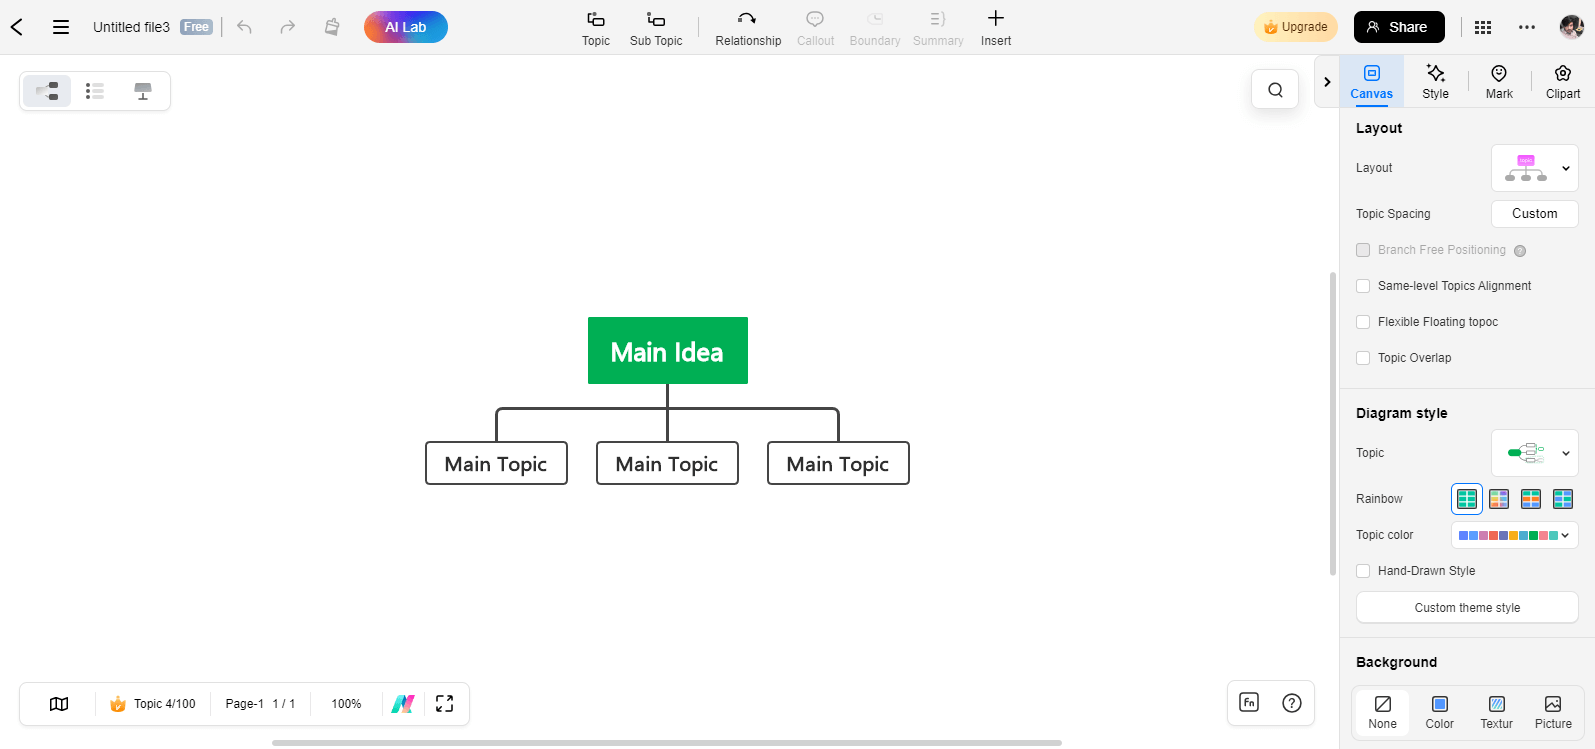 crear un árbol de decisión utilizando edrawmind online